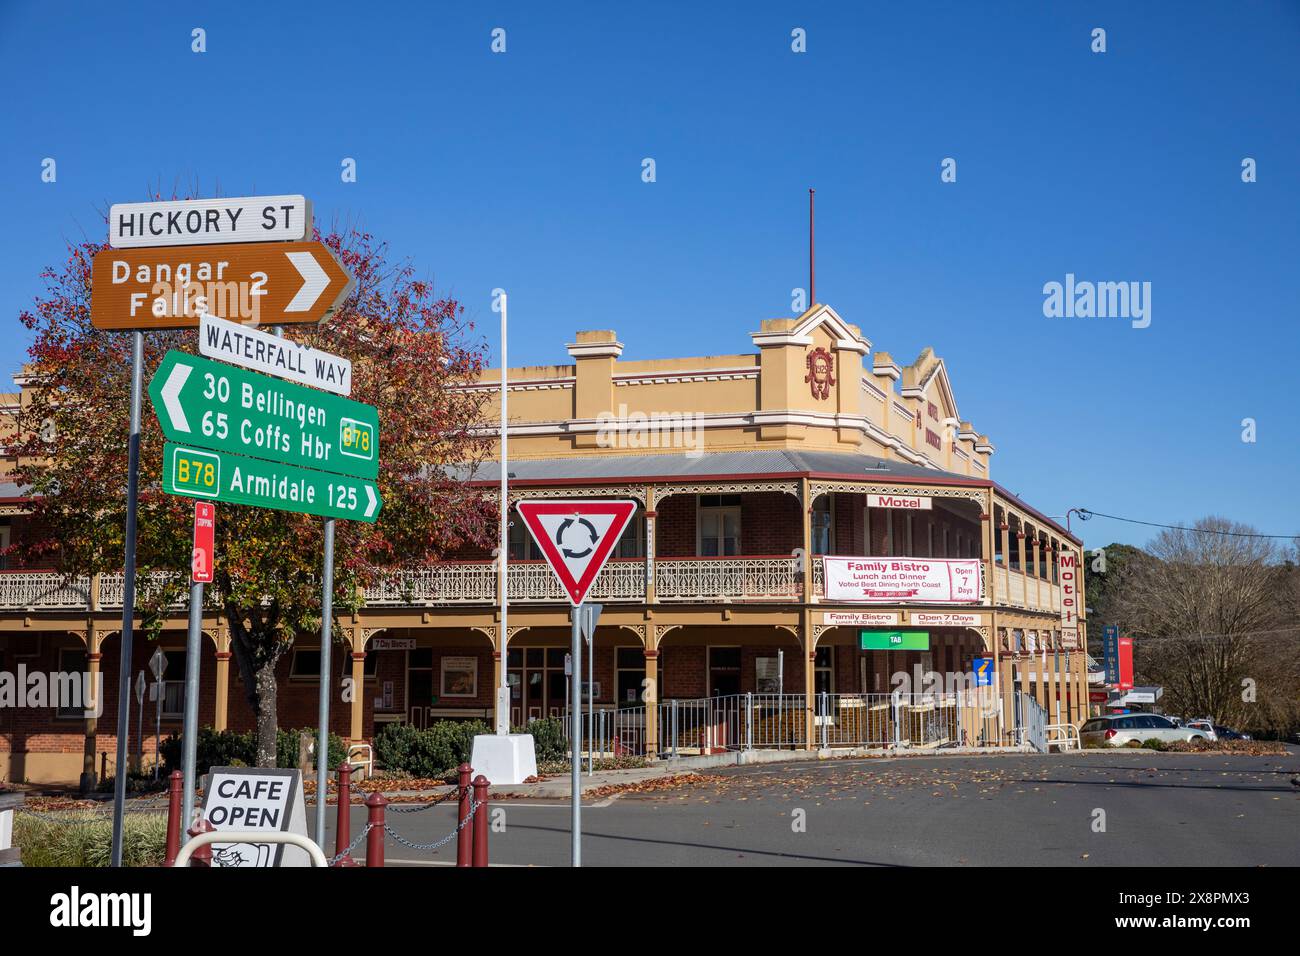 Das Heritage Hotel Dorrigo, Motelzimmer und Gastronomiebetrieb, Architektur und Kulturerbe der 1920er Jahre, Dorrigo Stadtzentrum, NSW, Australien Stockfoto